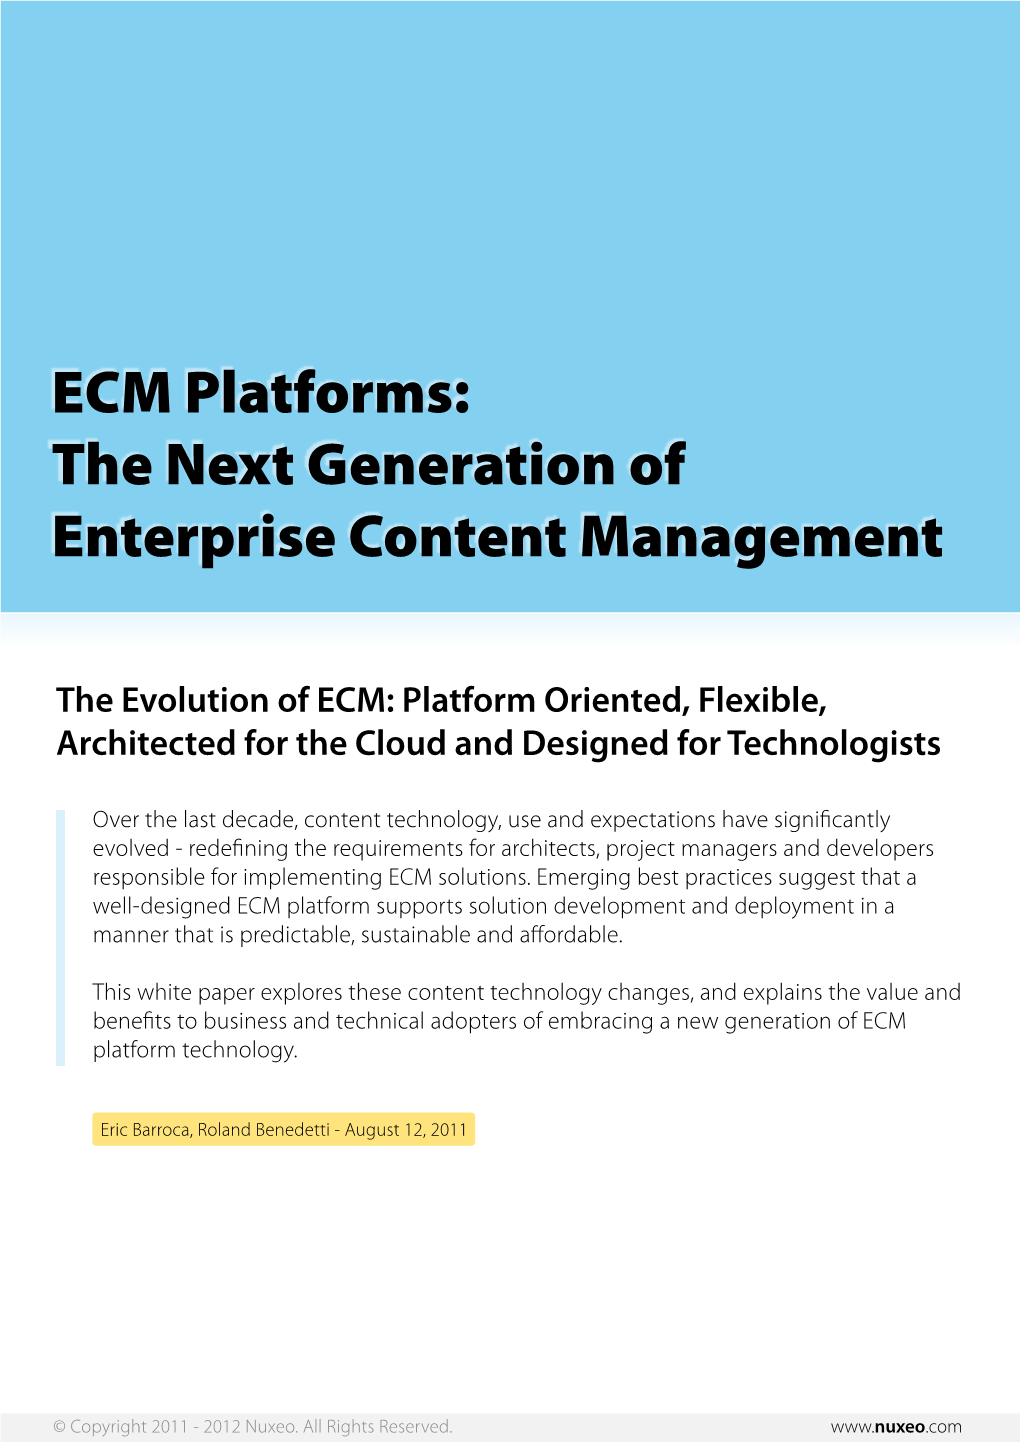 ECM Platforms: the Next Generation of Enterprise Content Management